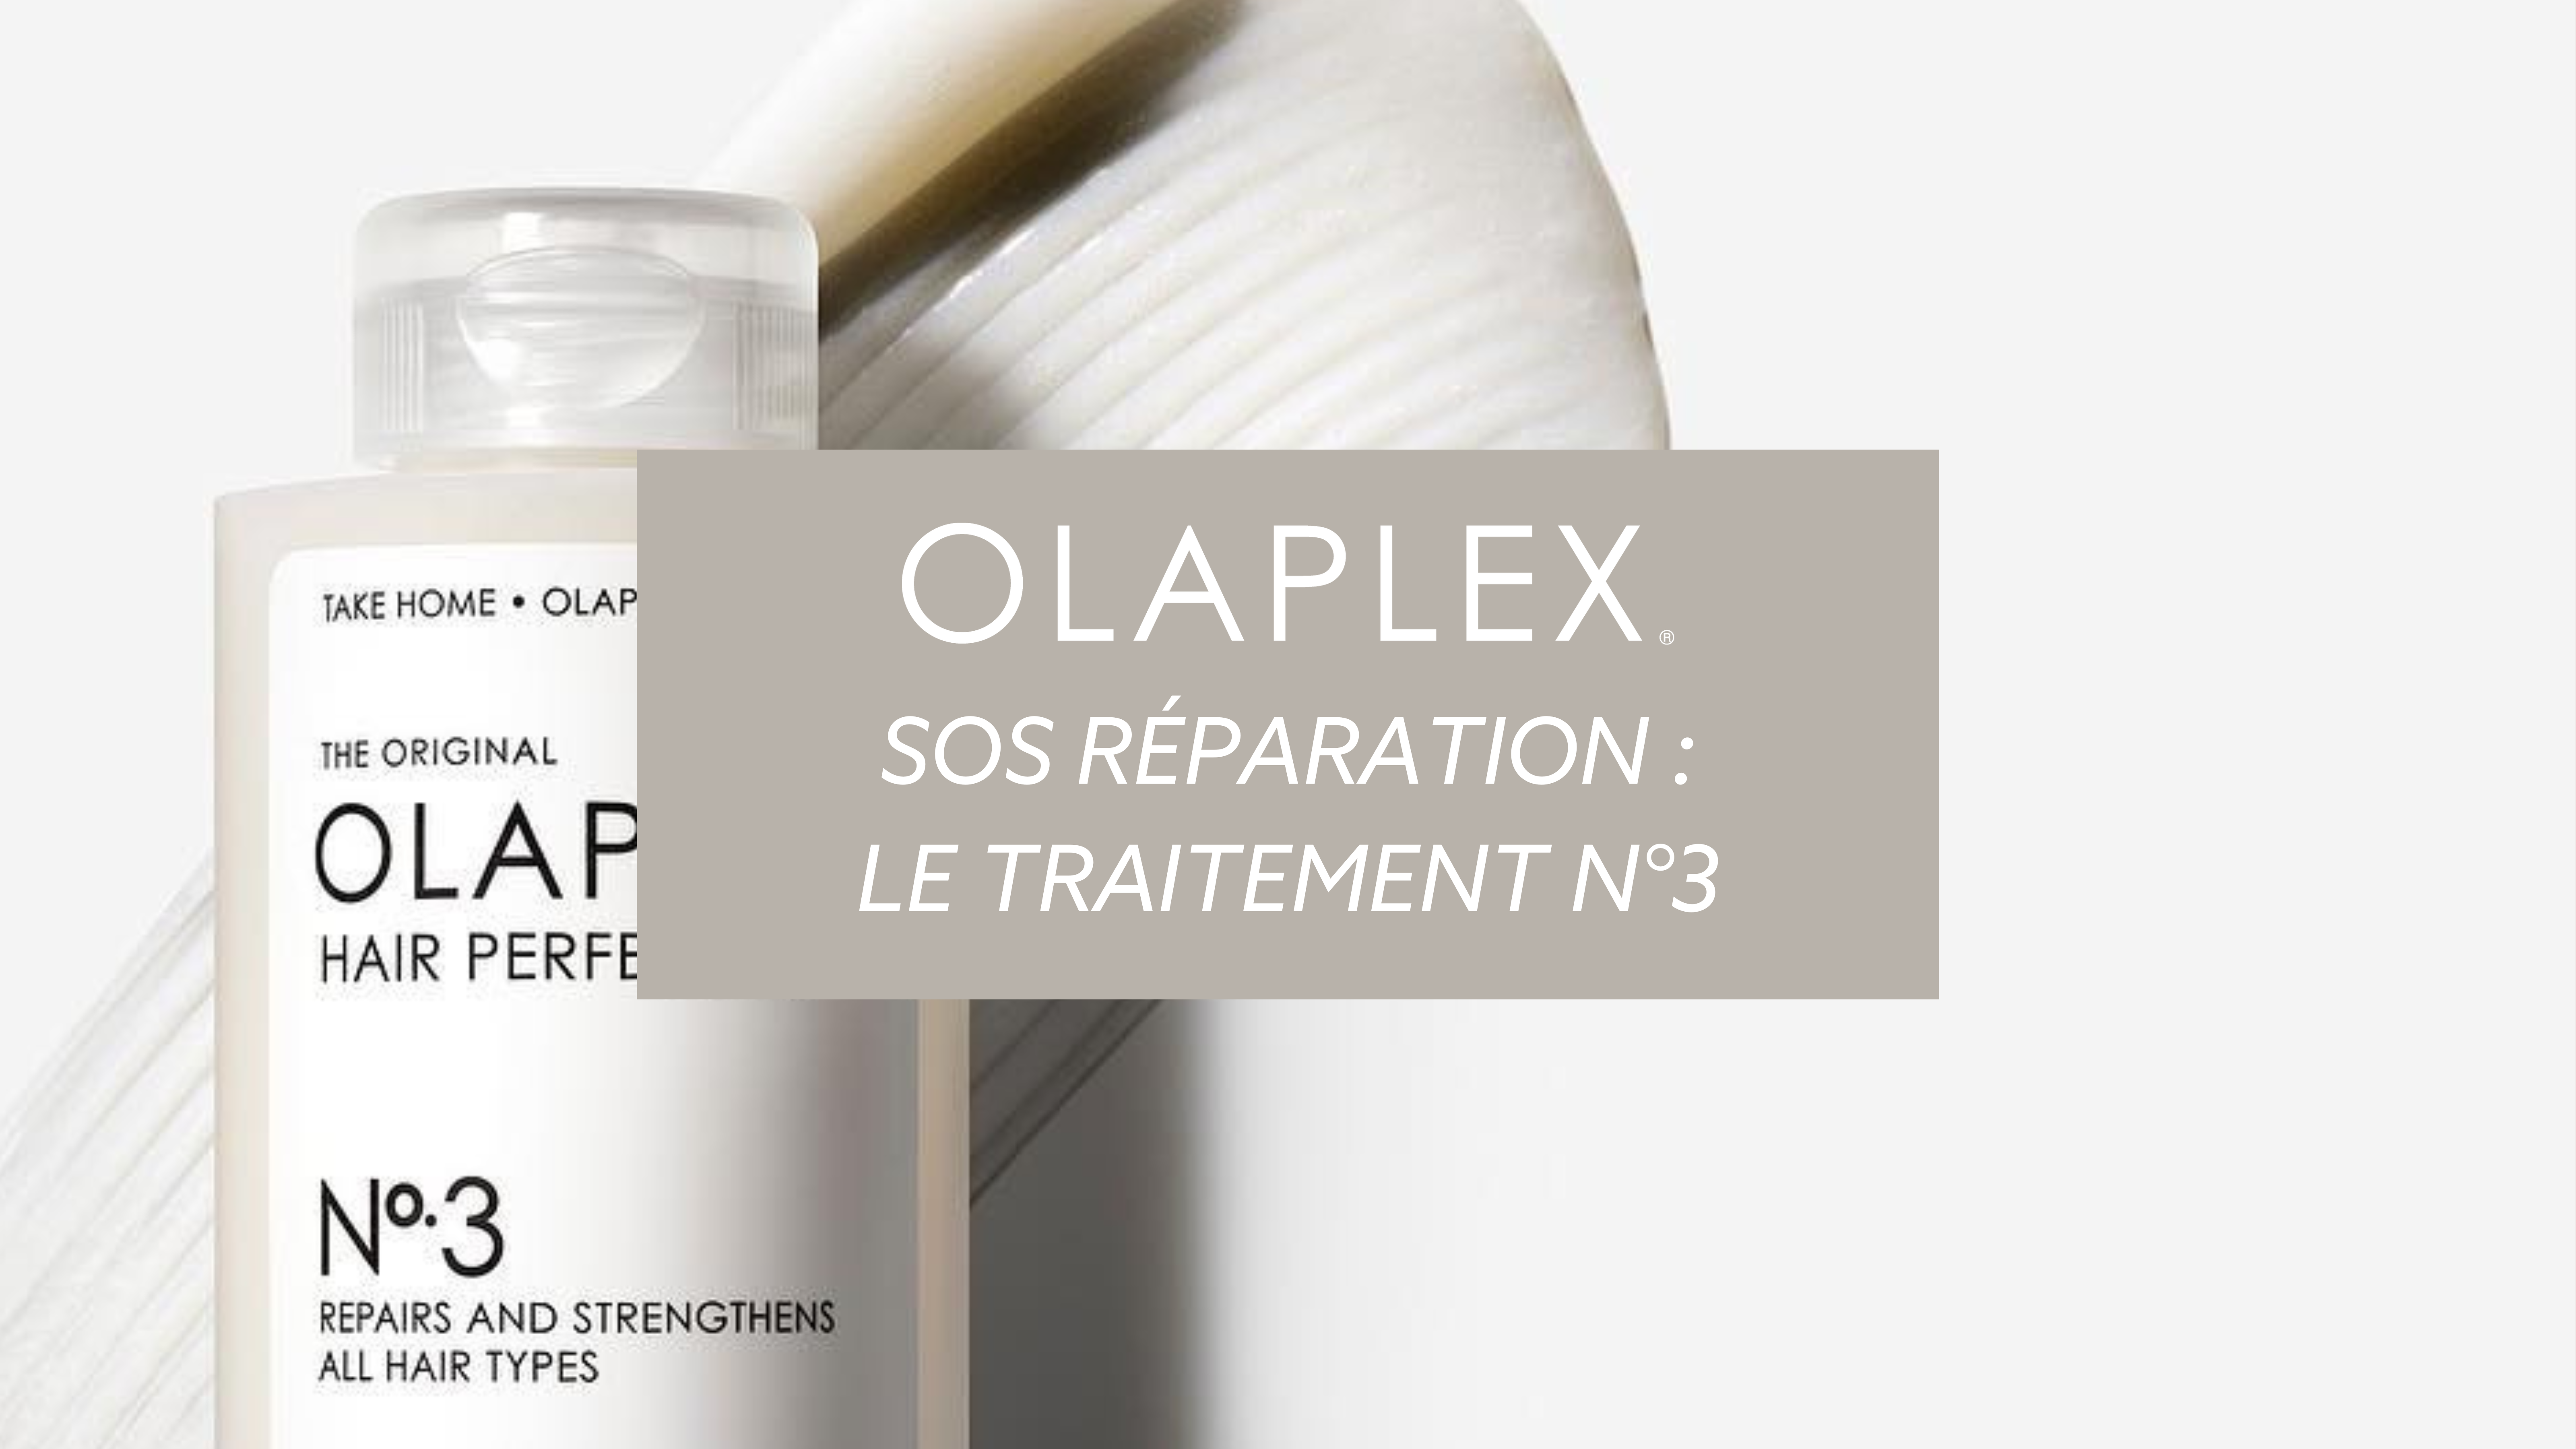 Comment utiliser le traitement Olaplex N°3 ?